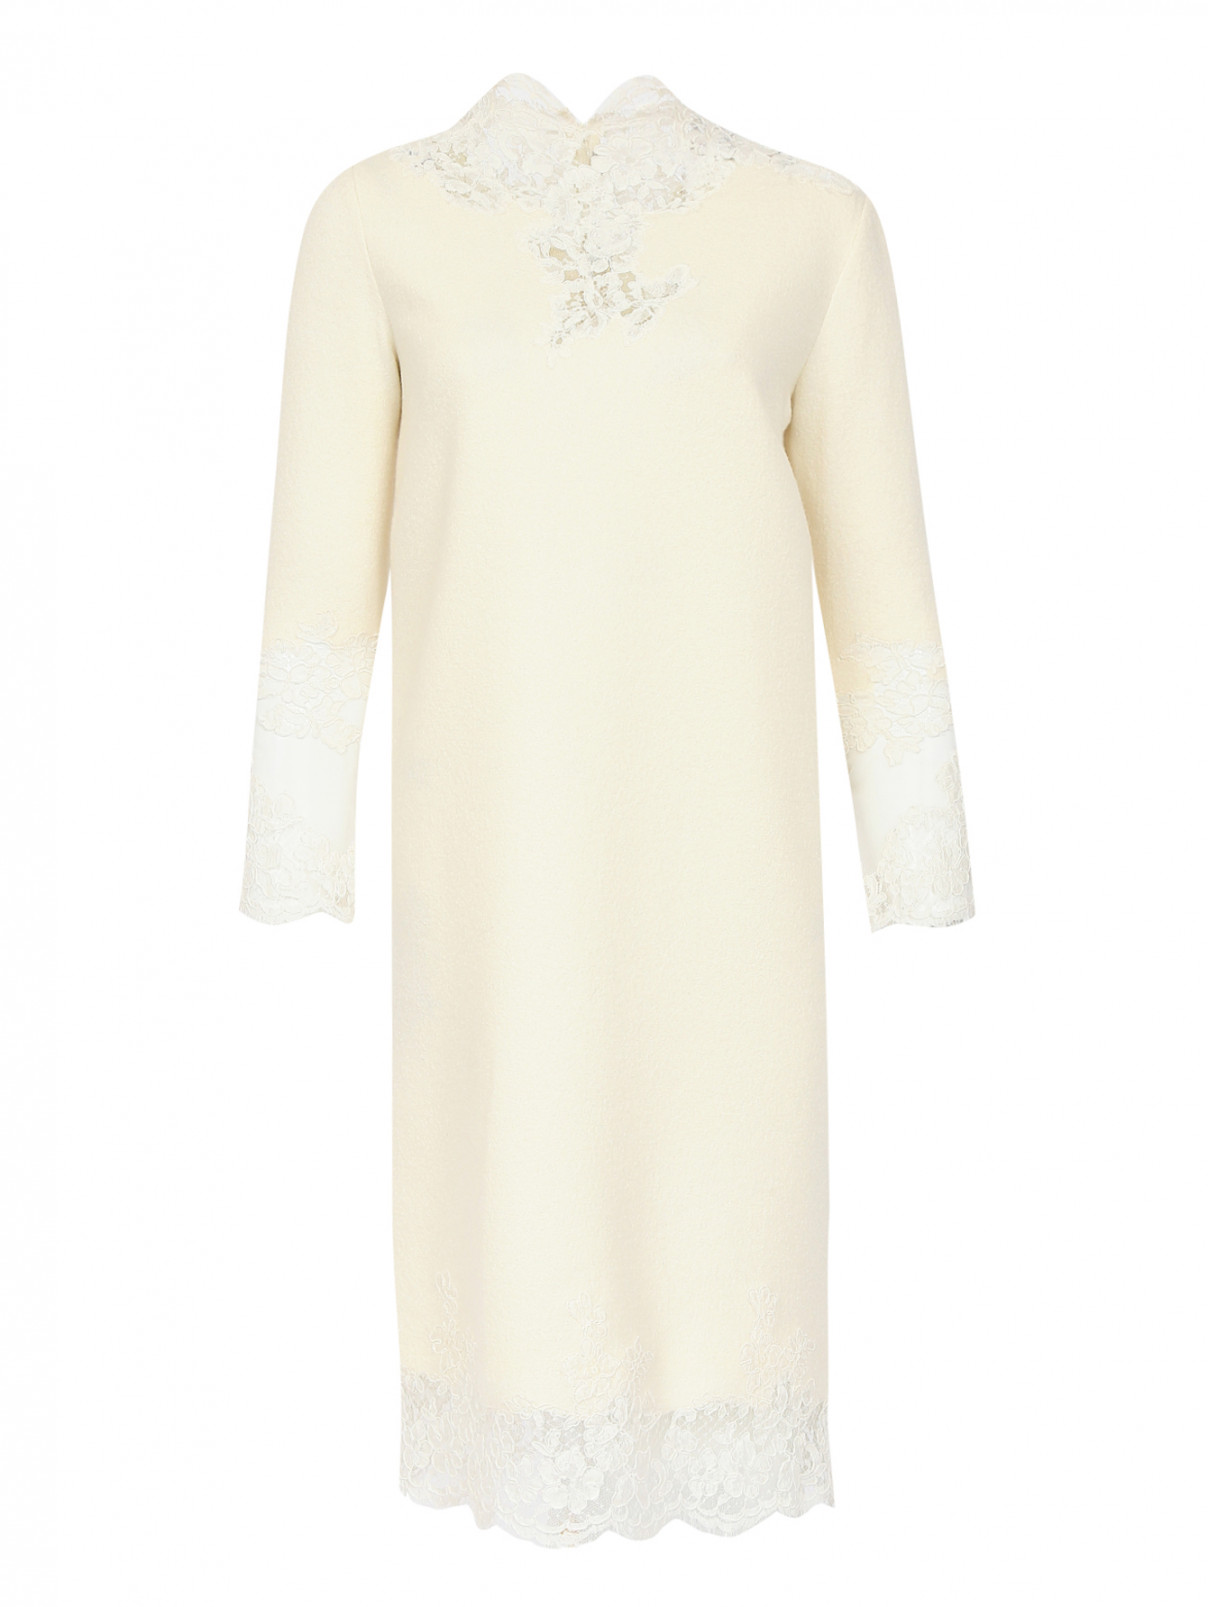 Платье из шерсти, шелка и кашемира с отделкой из кружева Ermanno Scervino  –  Общий вид  – Цвет:  Белый